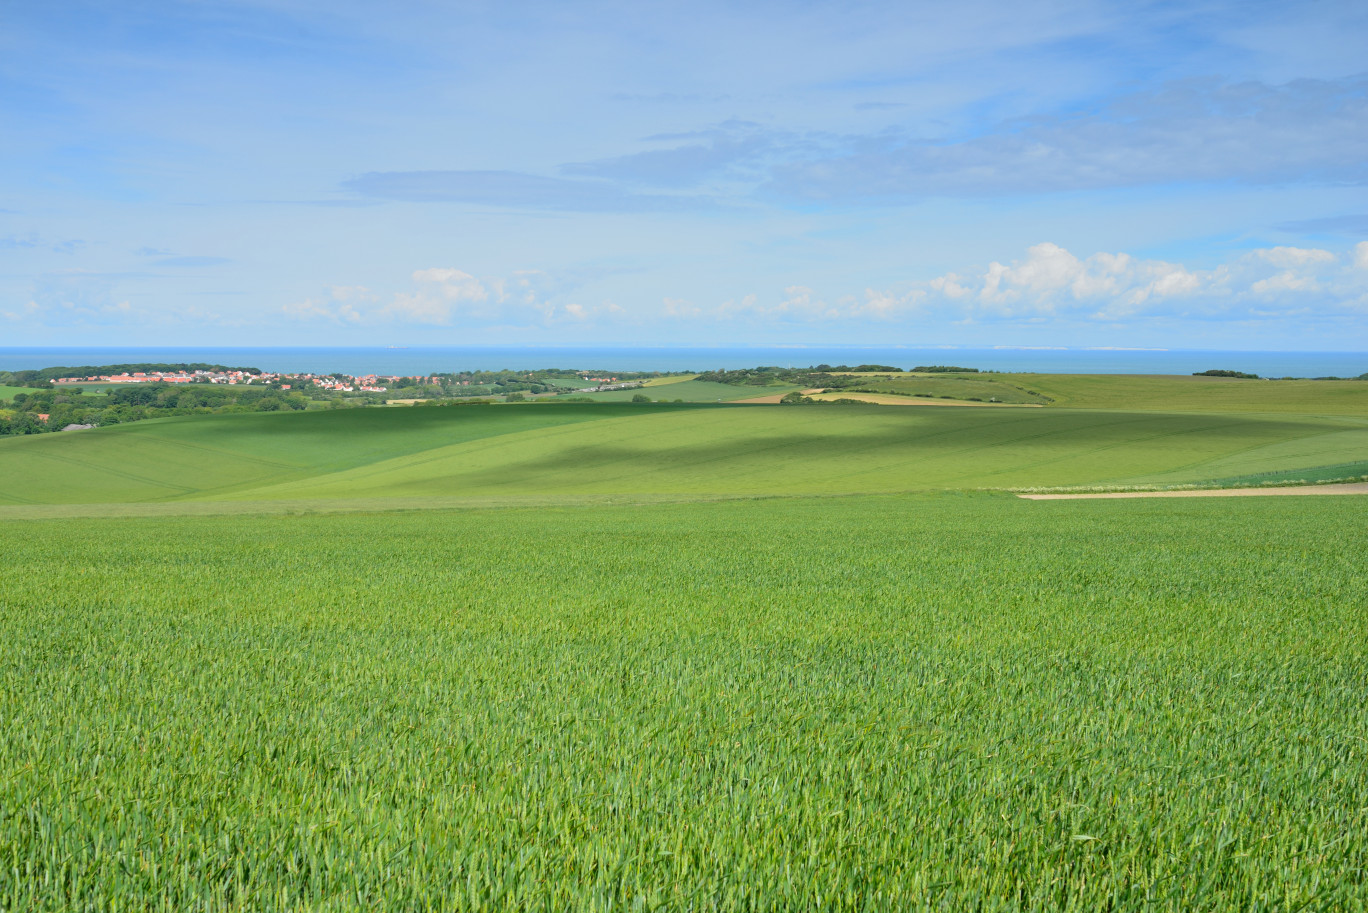 Les Hauts-de-France se hissent à la 3e position au niveau national en termes de production de céréales. © Image'in